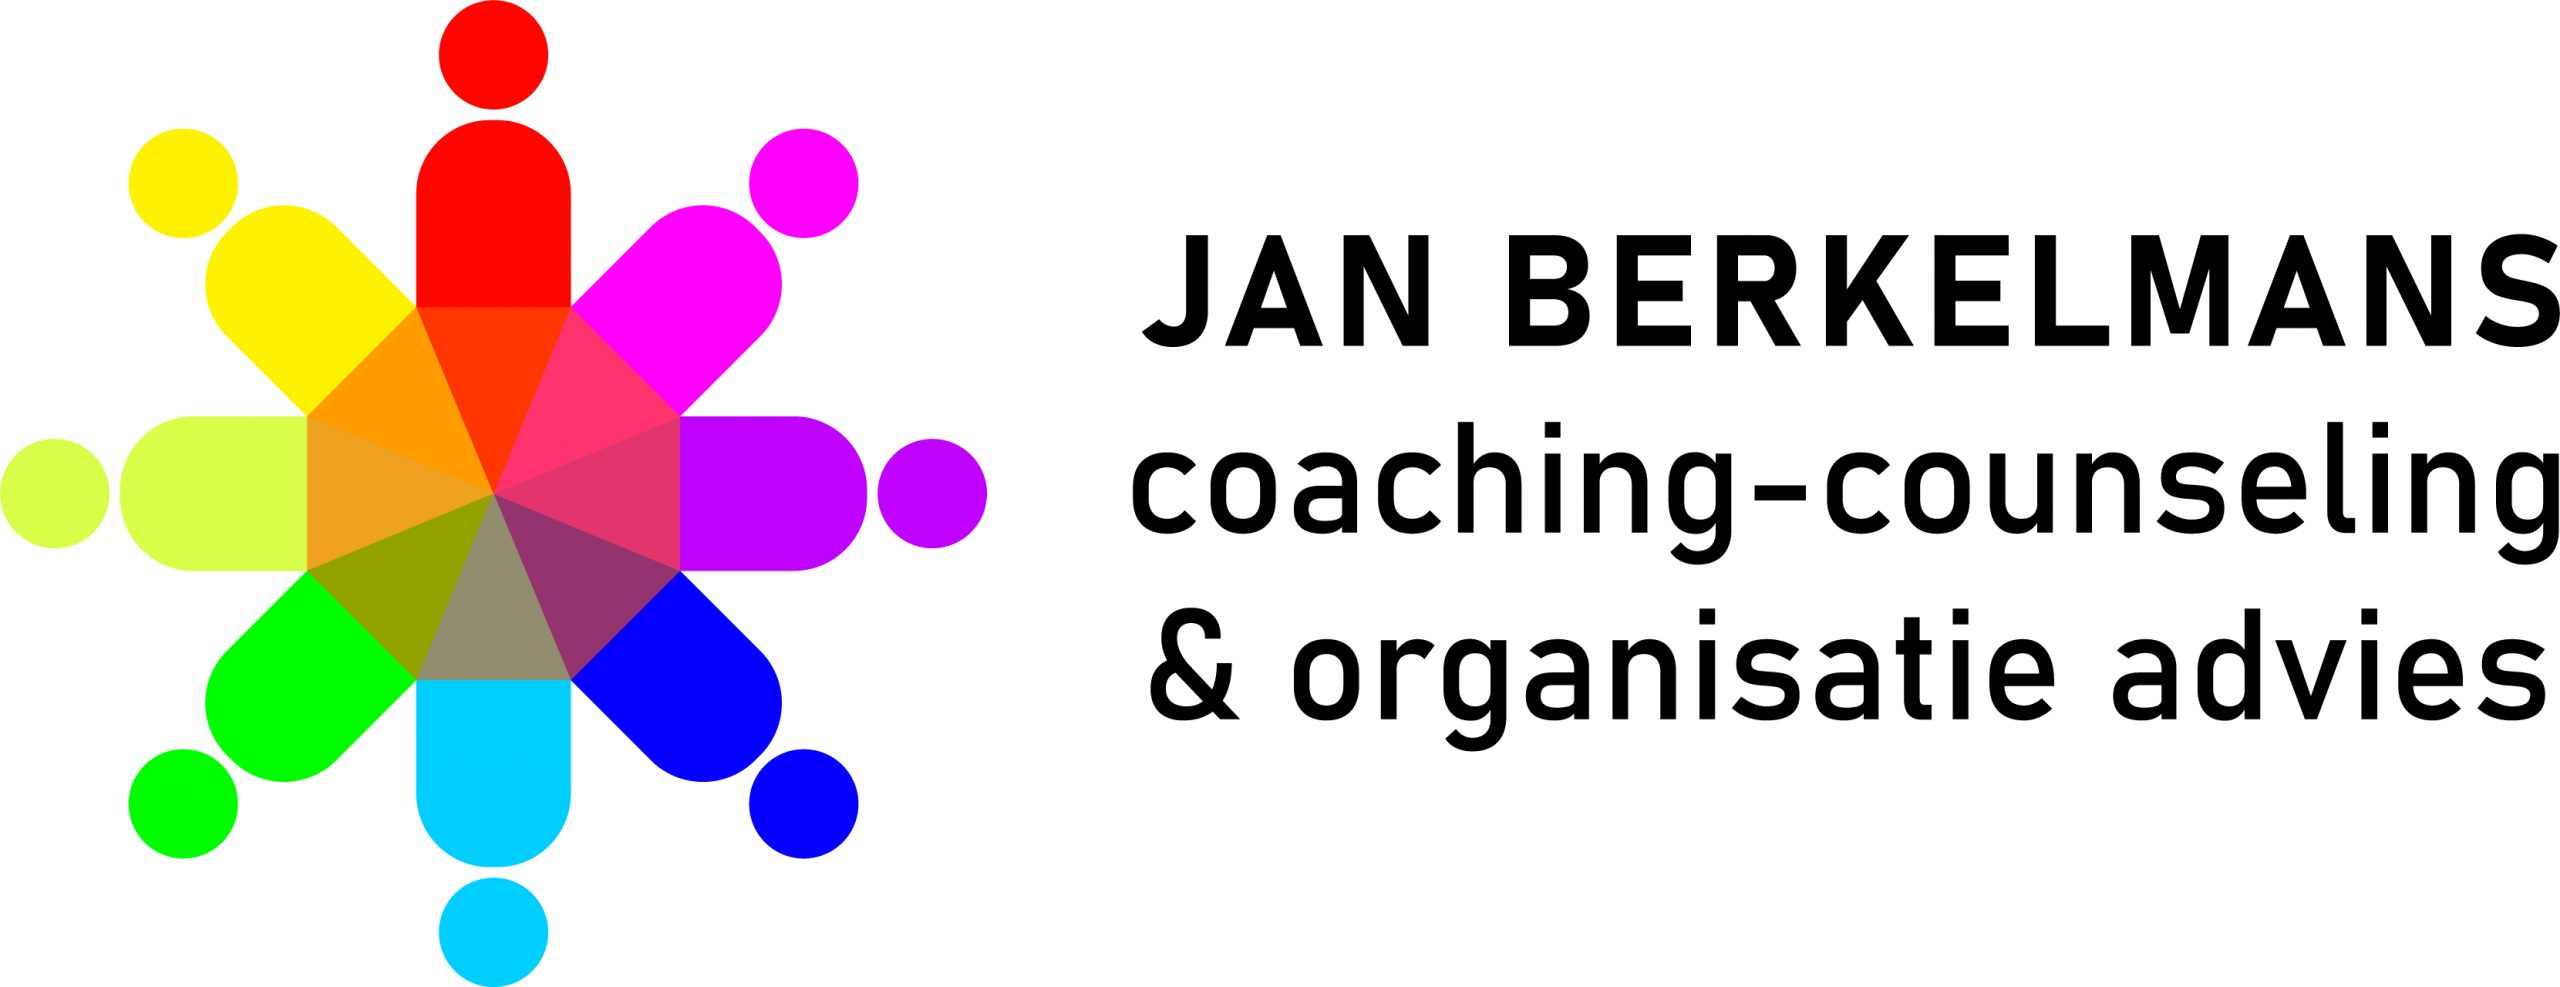 Jan Berkelmans couching-counceling & organisatieadvies